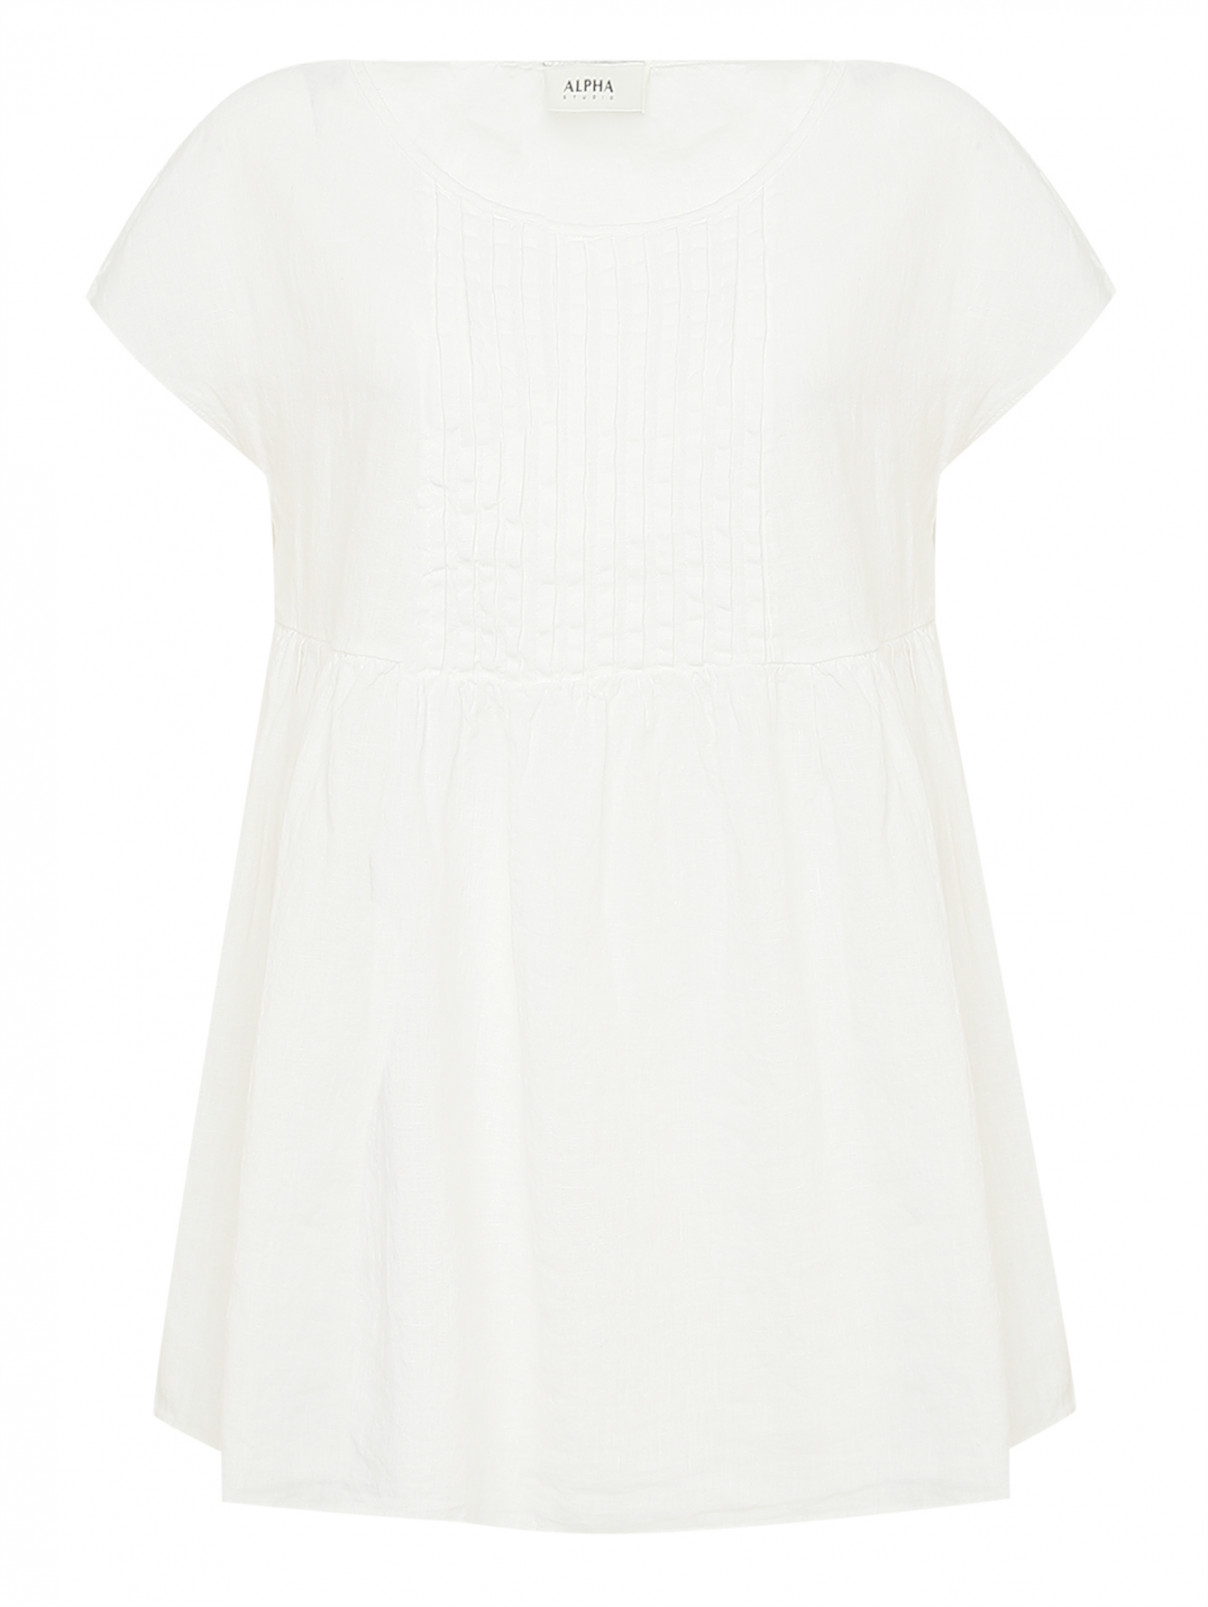 Блуза изо льна с коротким рукавом Alpha Studio  –  Общий вид  – Цвет:  Белый